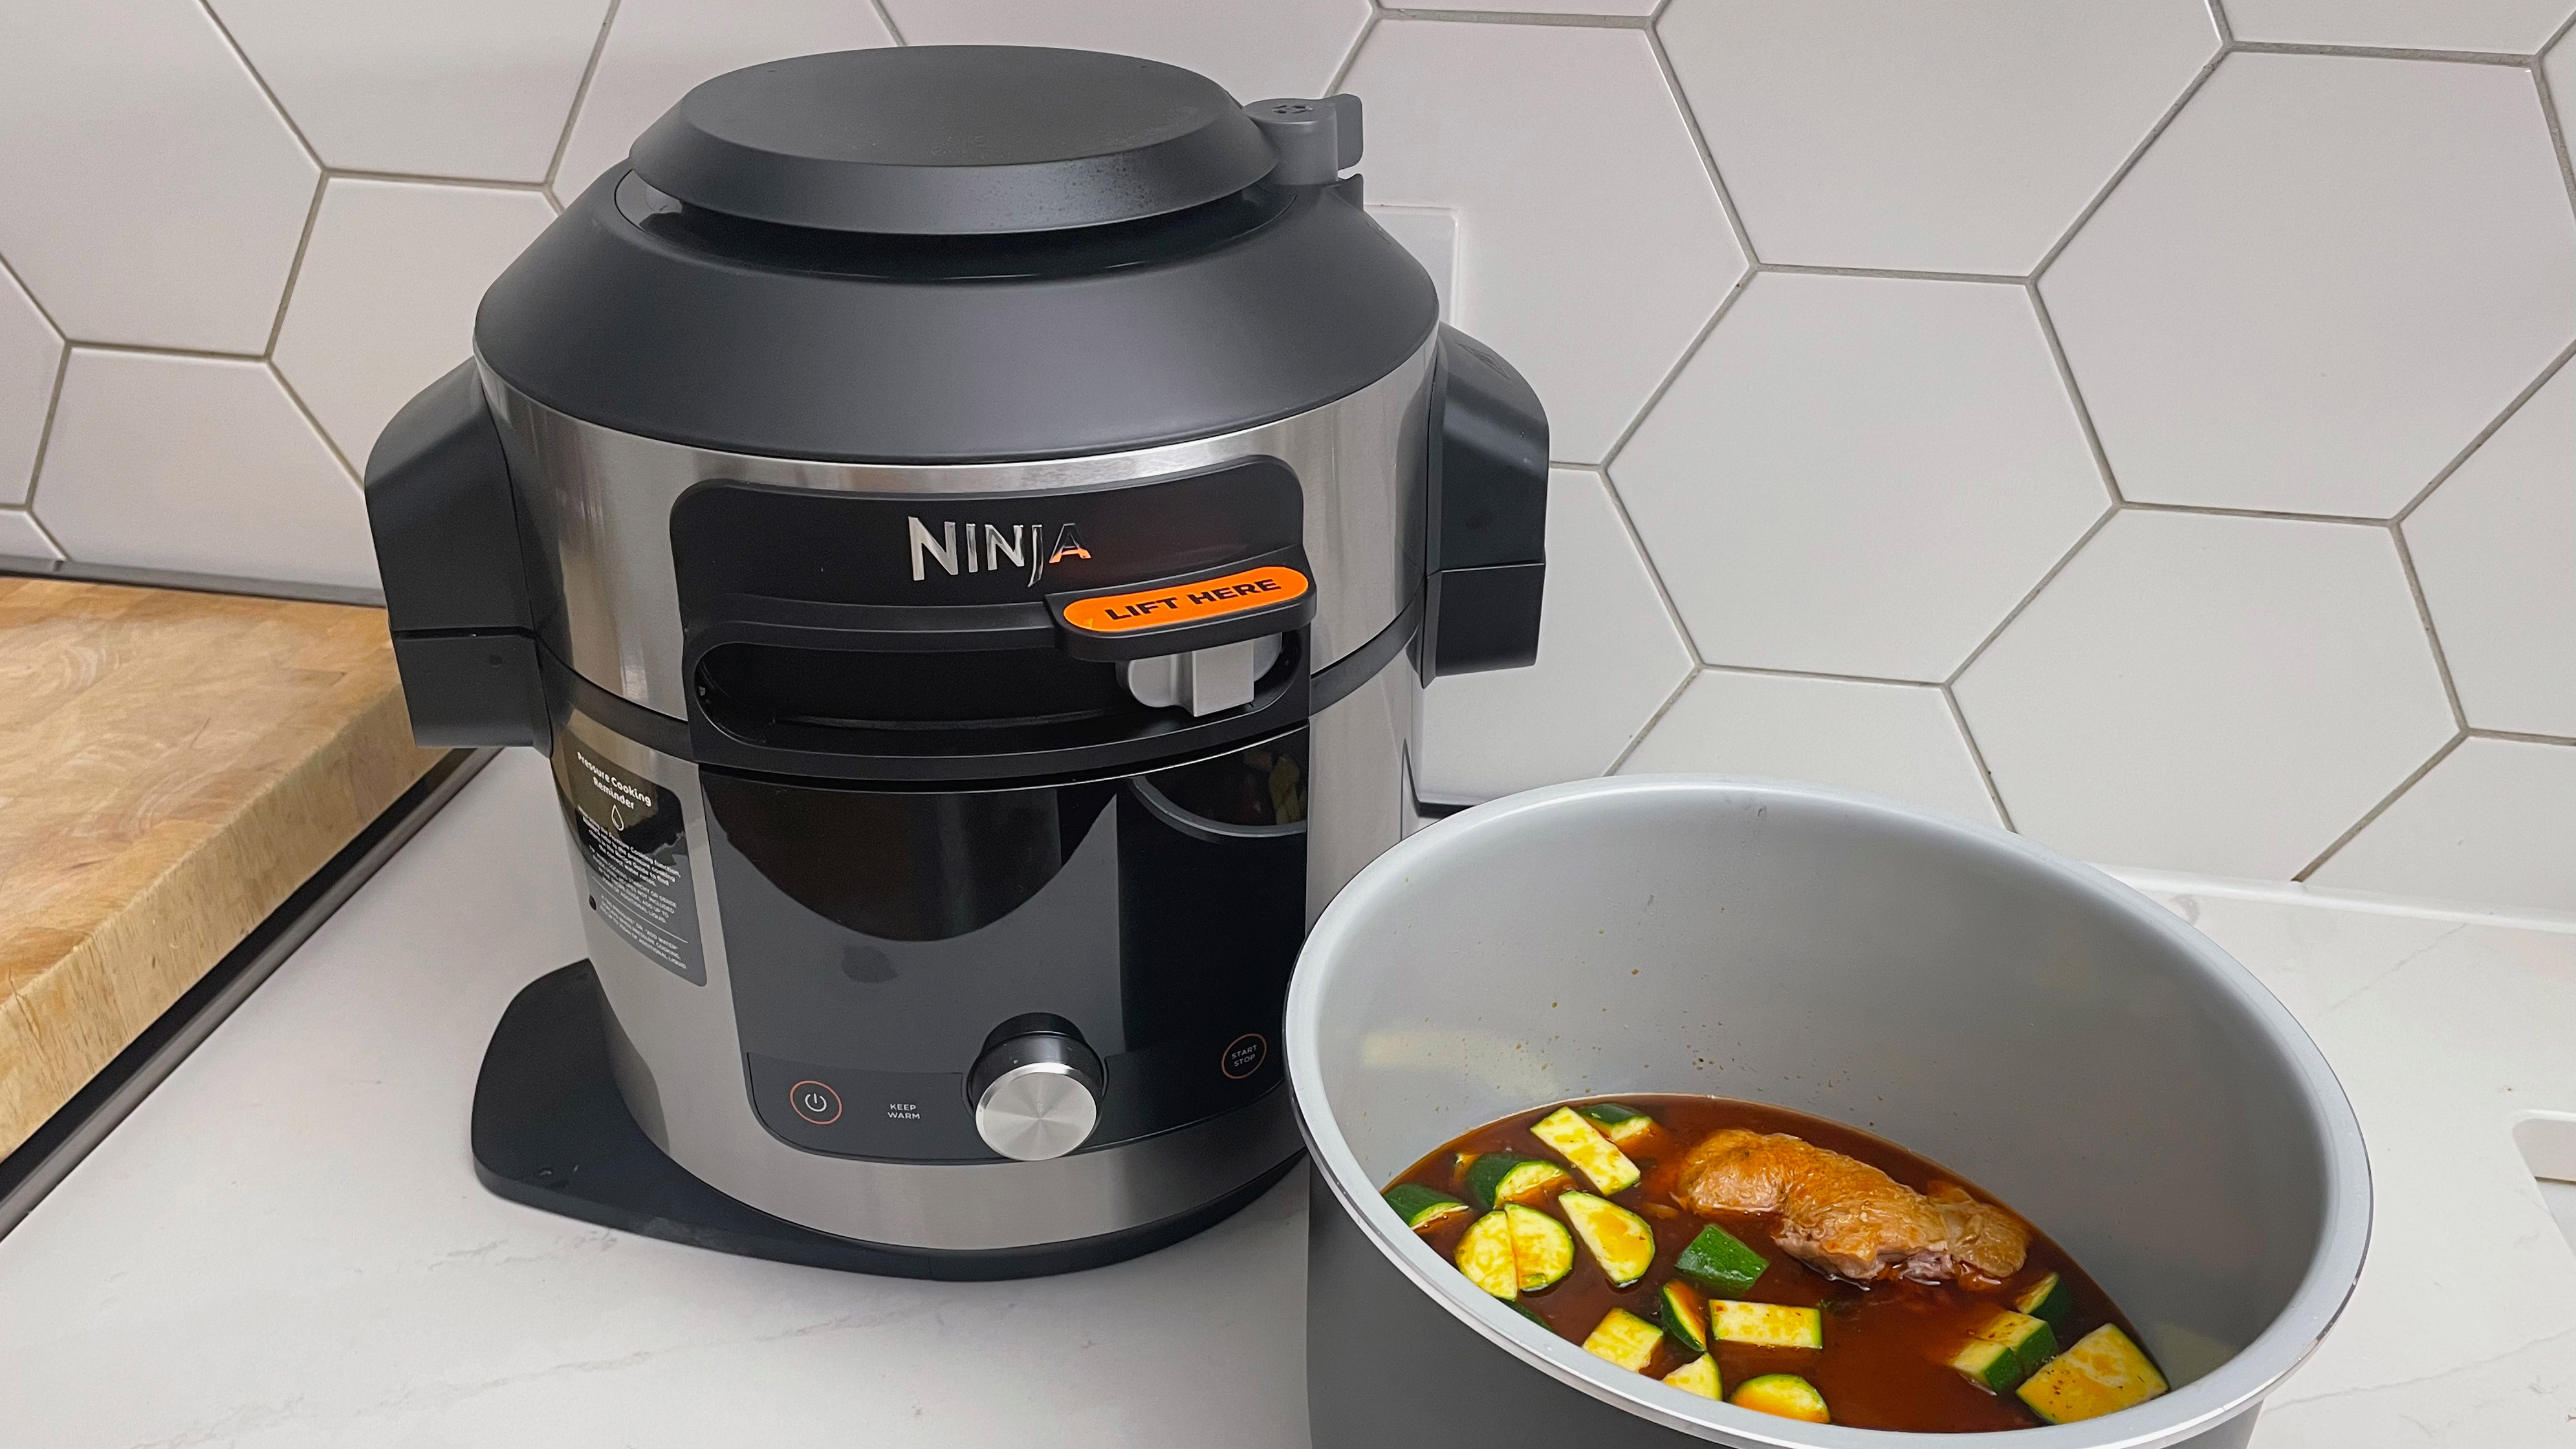 Ninja Foodi 15-in-1 SmartLid Multi-Cooker telah digunakan untuk memasak kari ayam